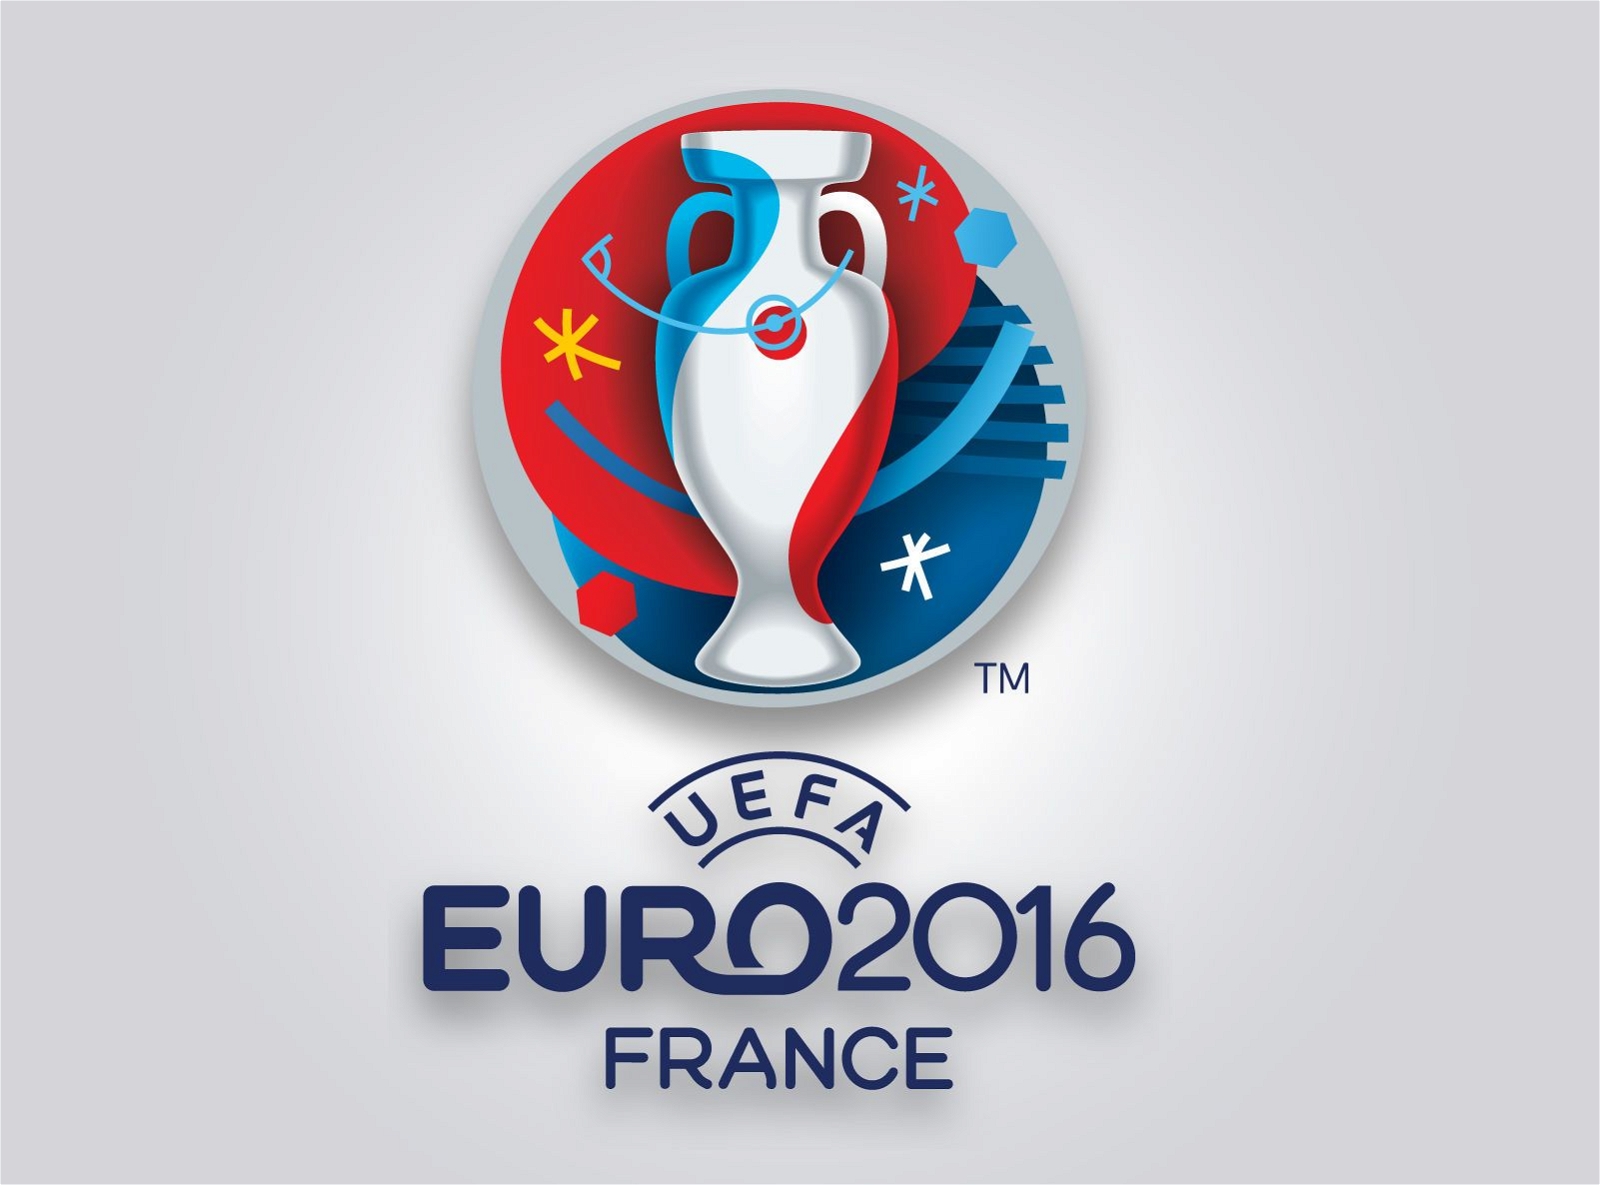 Logotipo de la UEFA Euro 2016 Francia